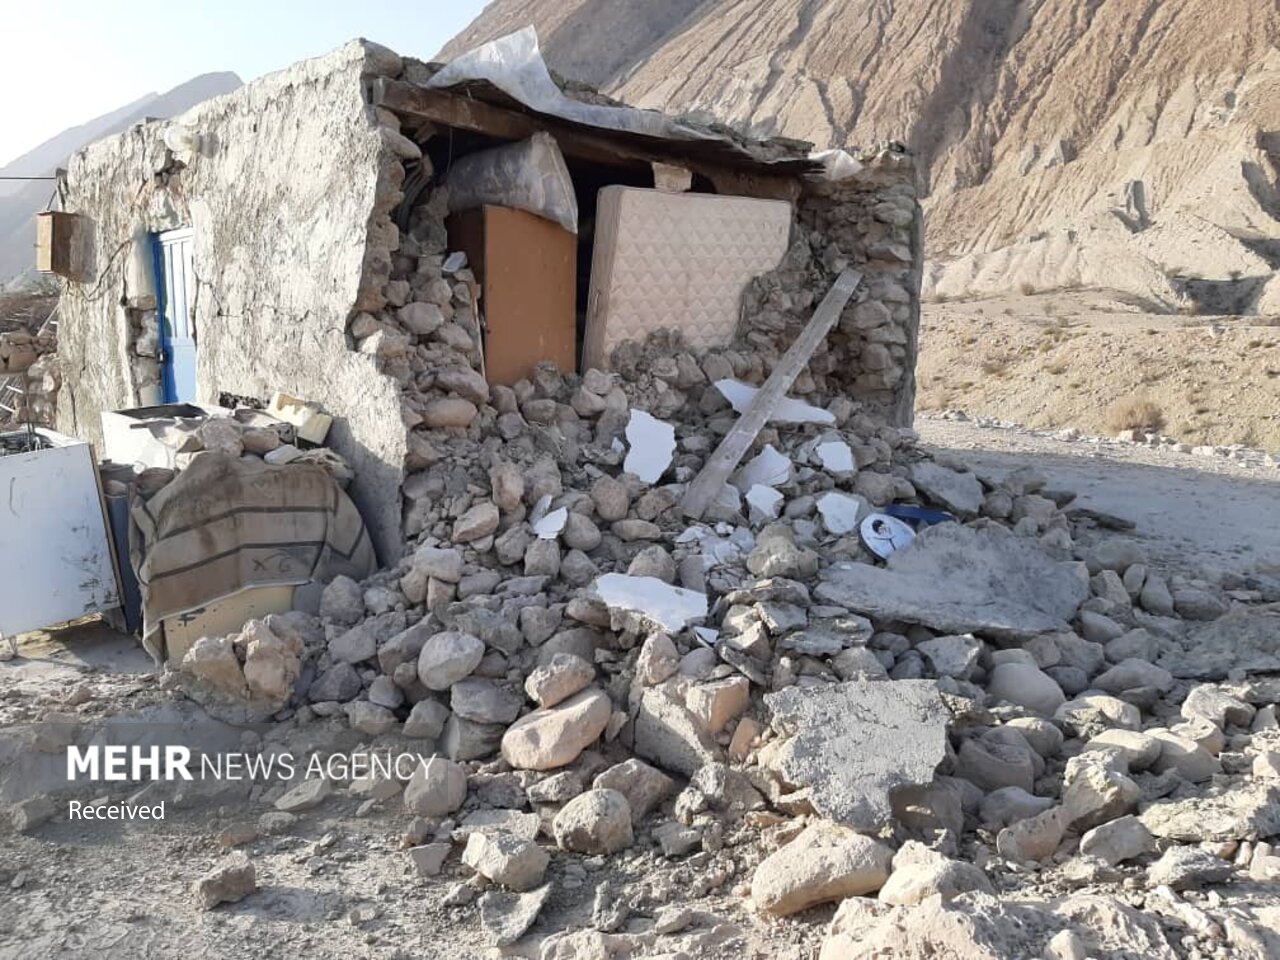 ۸ روستای هرمزگان متحمل بیشترین خسارت زلزله شدند